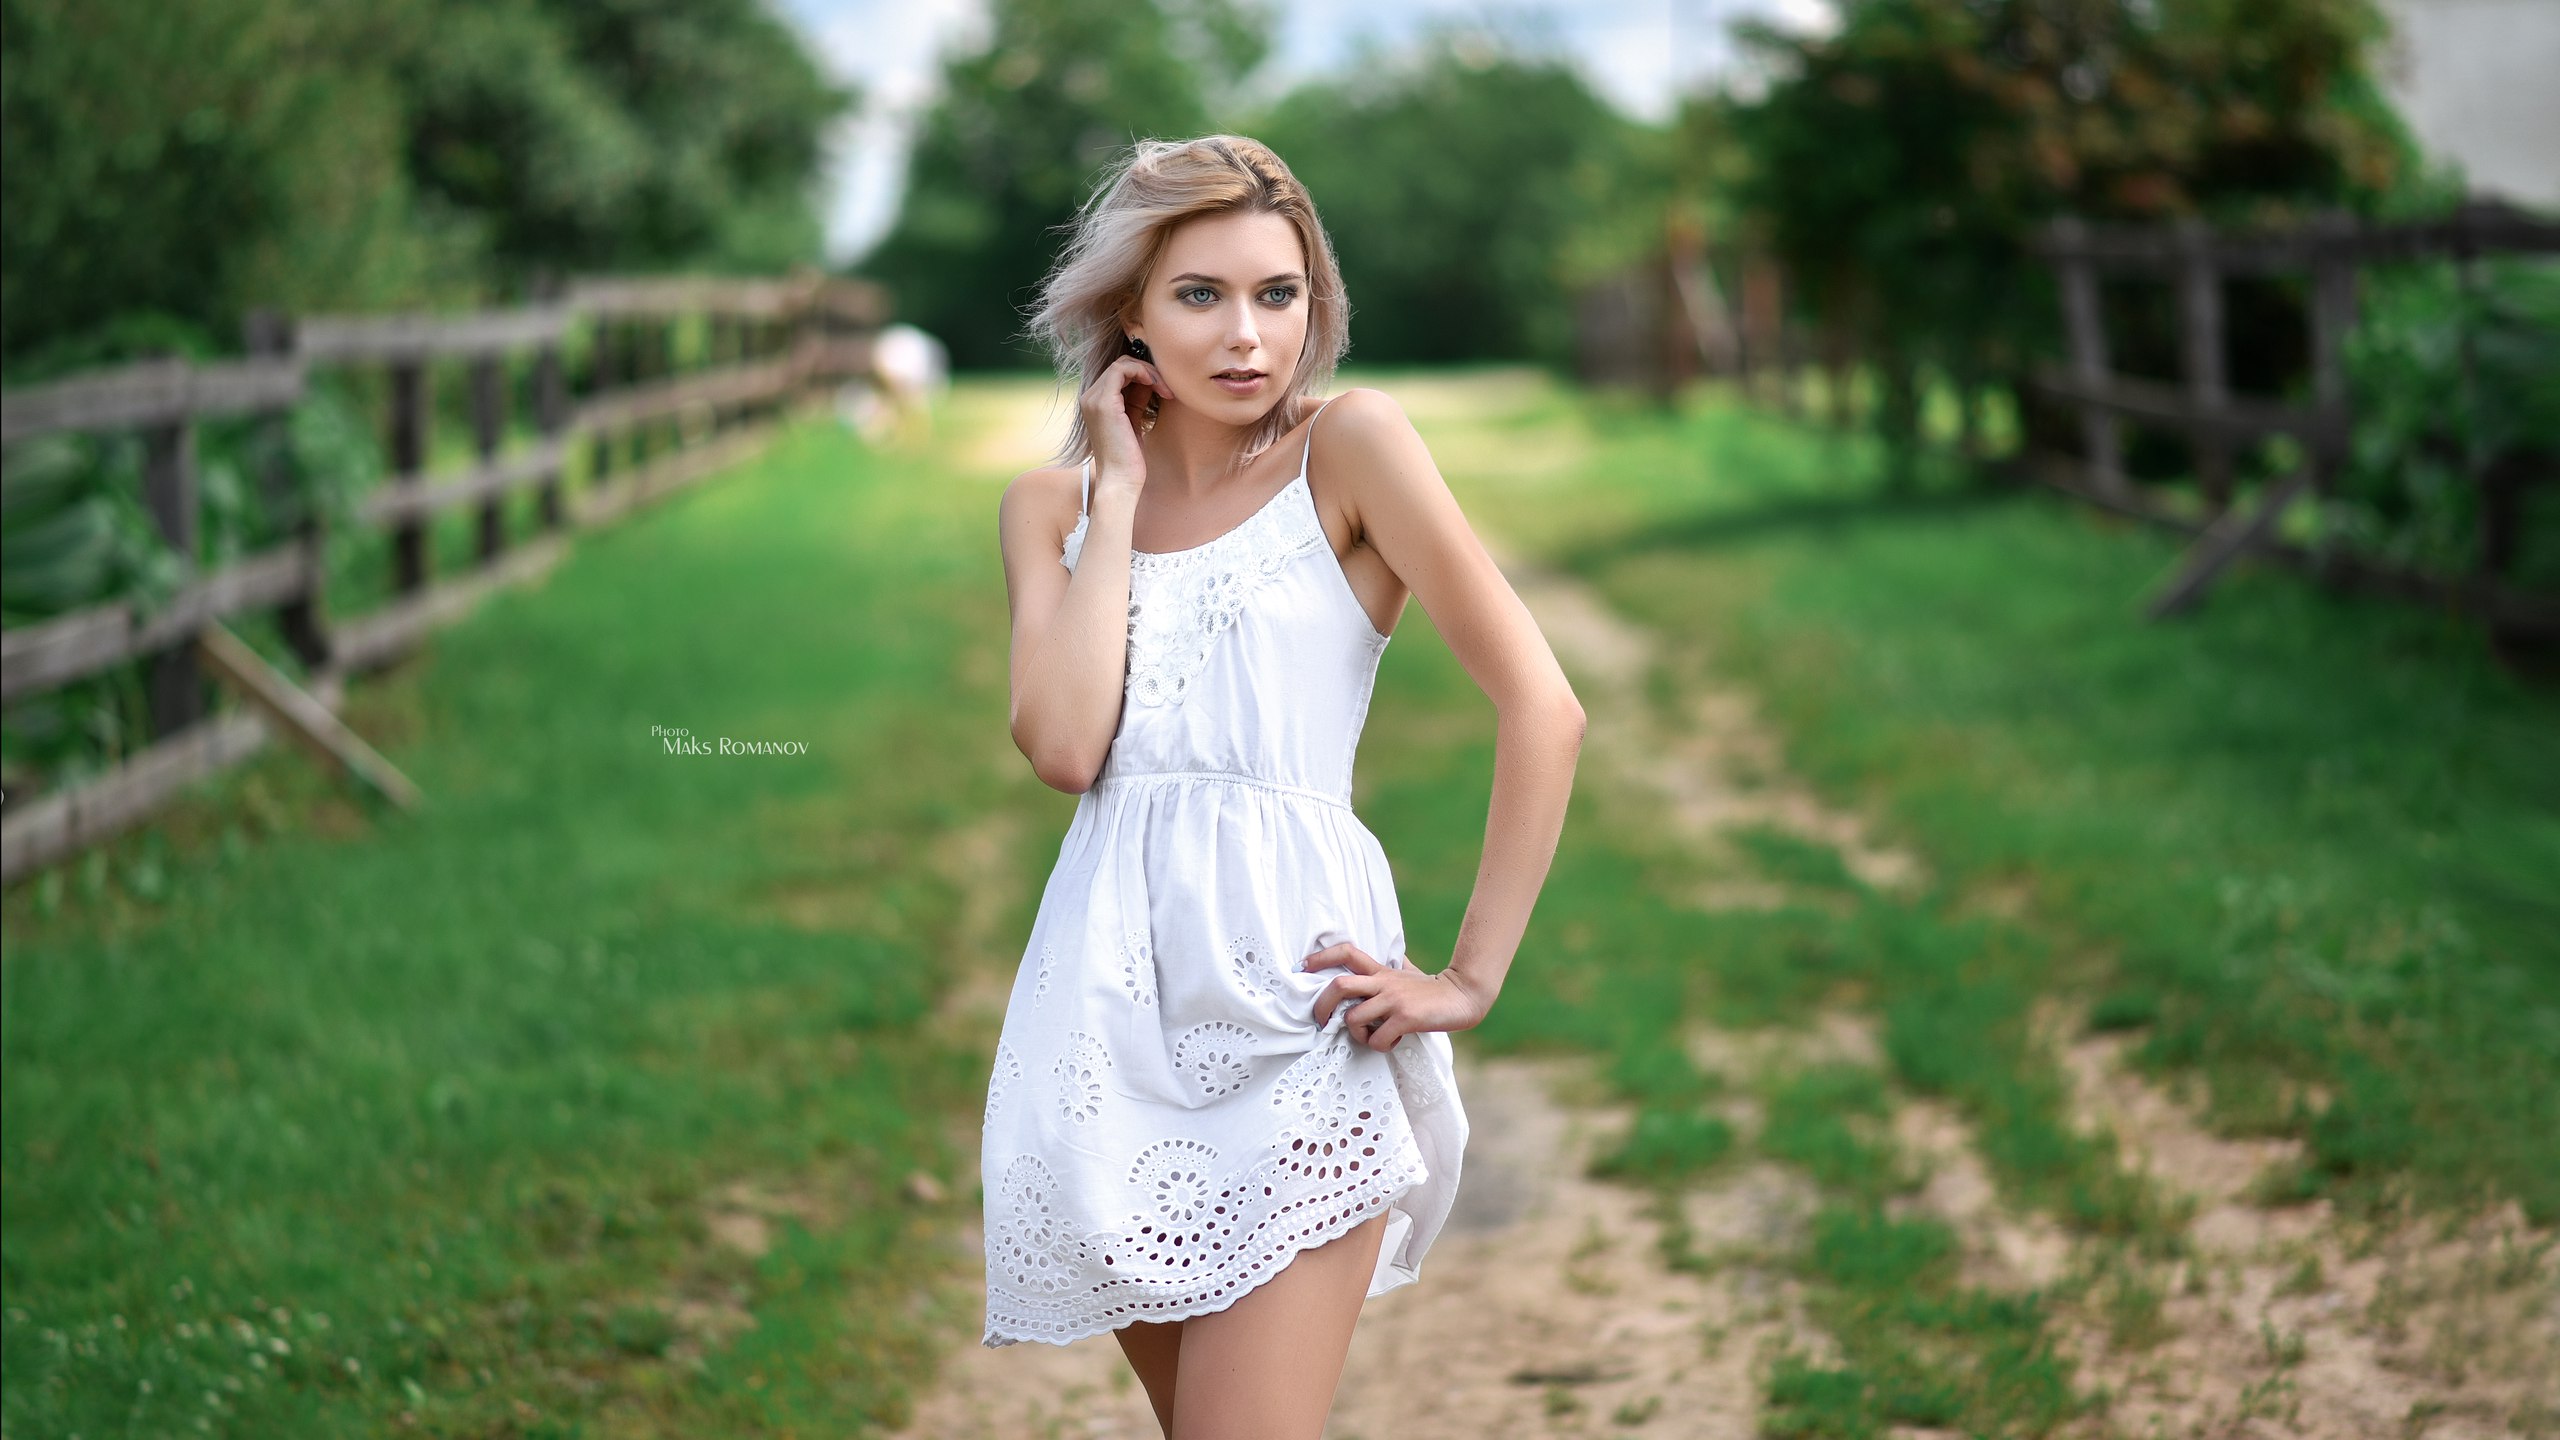 Women Maksim Romanov Blonde Portrait White Dress Depth Of Field Women Outdoors Looking Away 2560x1440